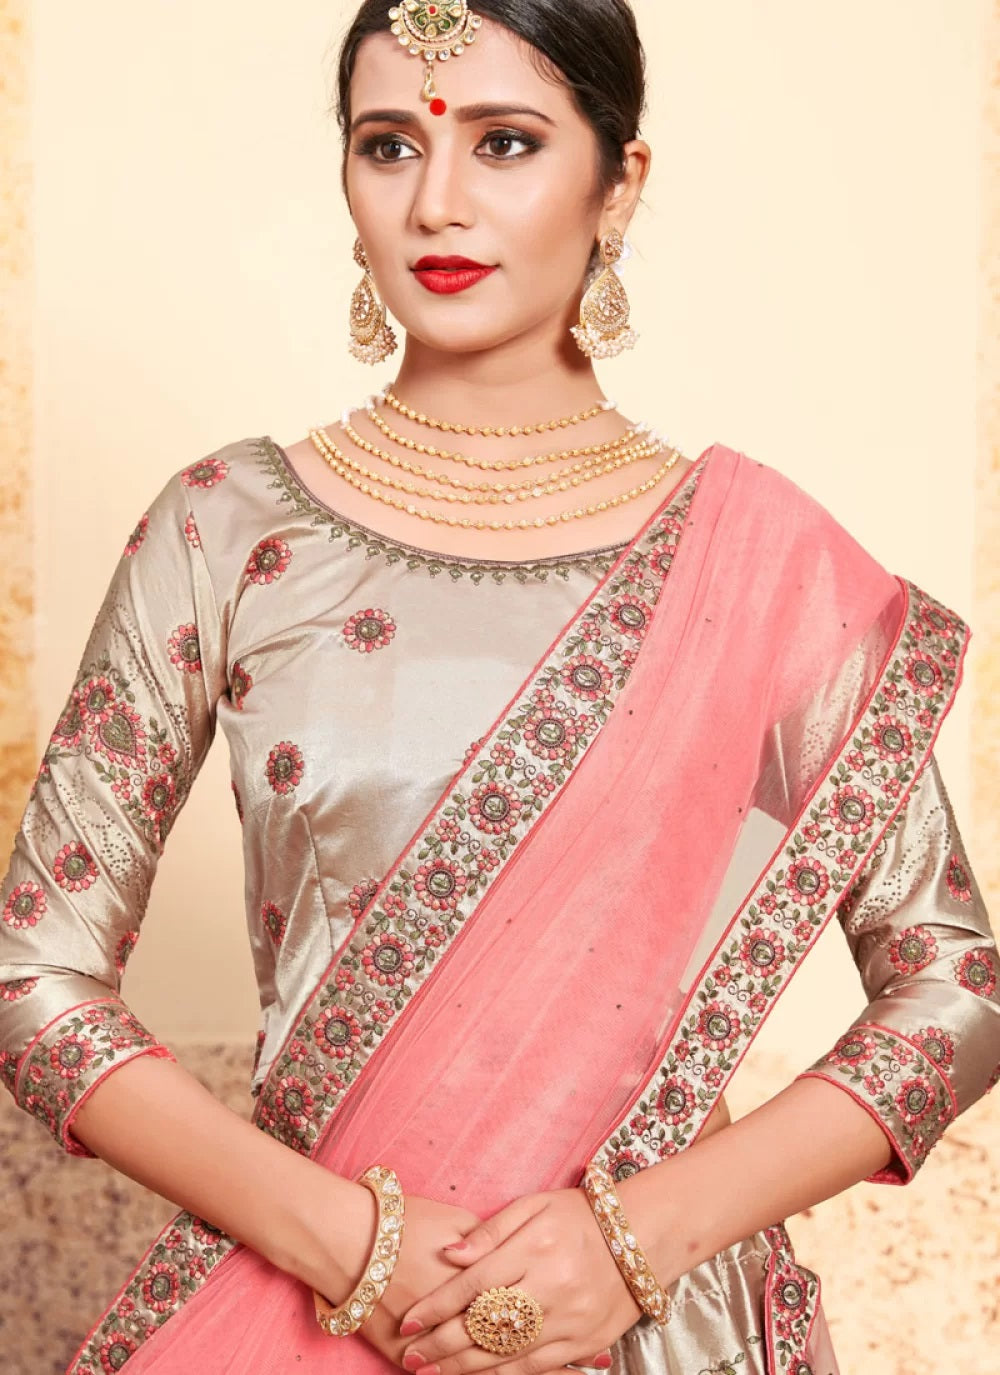 Beautiful Linen Satin Lehenga with jacket. | Indian fashion dresses, Indian  fashion, Stylish dresses